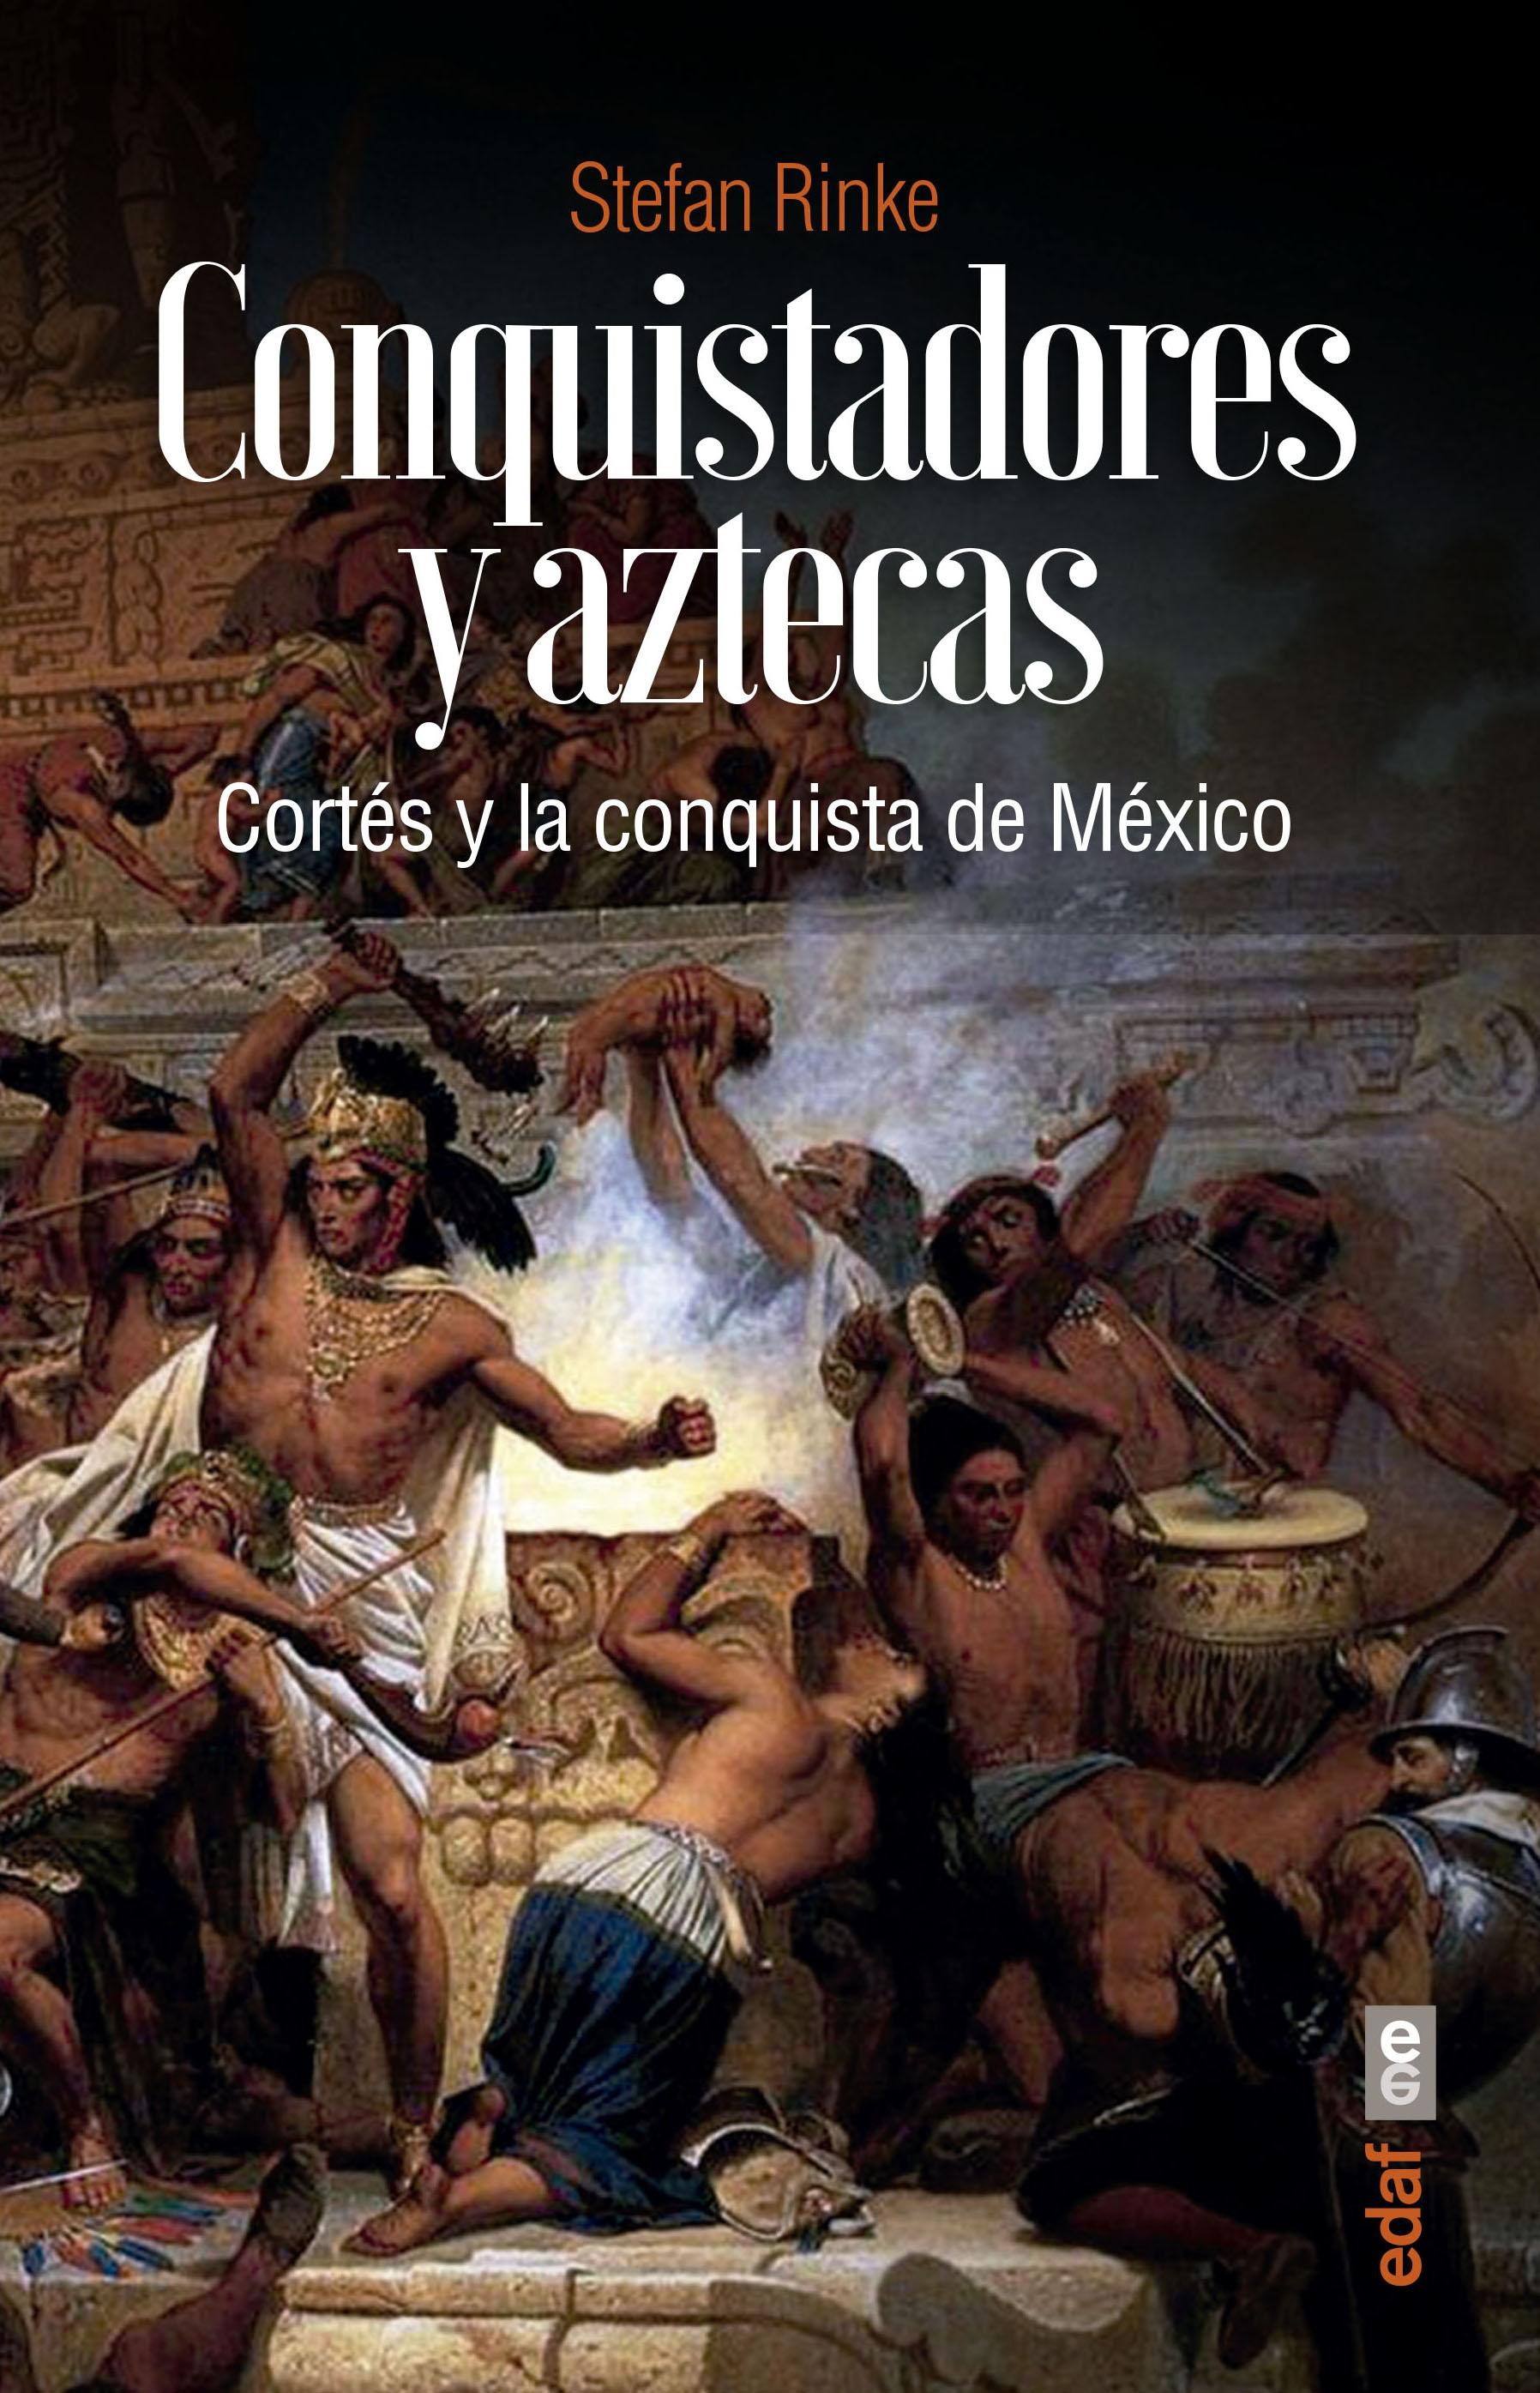 Conquistadores y aztecas "Cortés y la conquista de México"